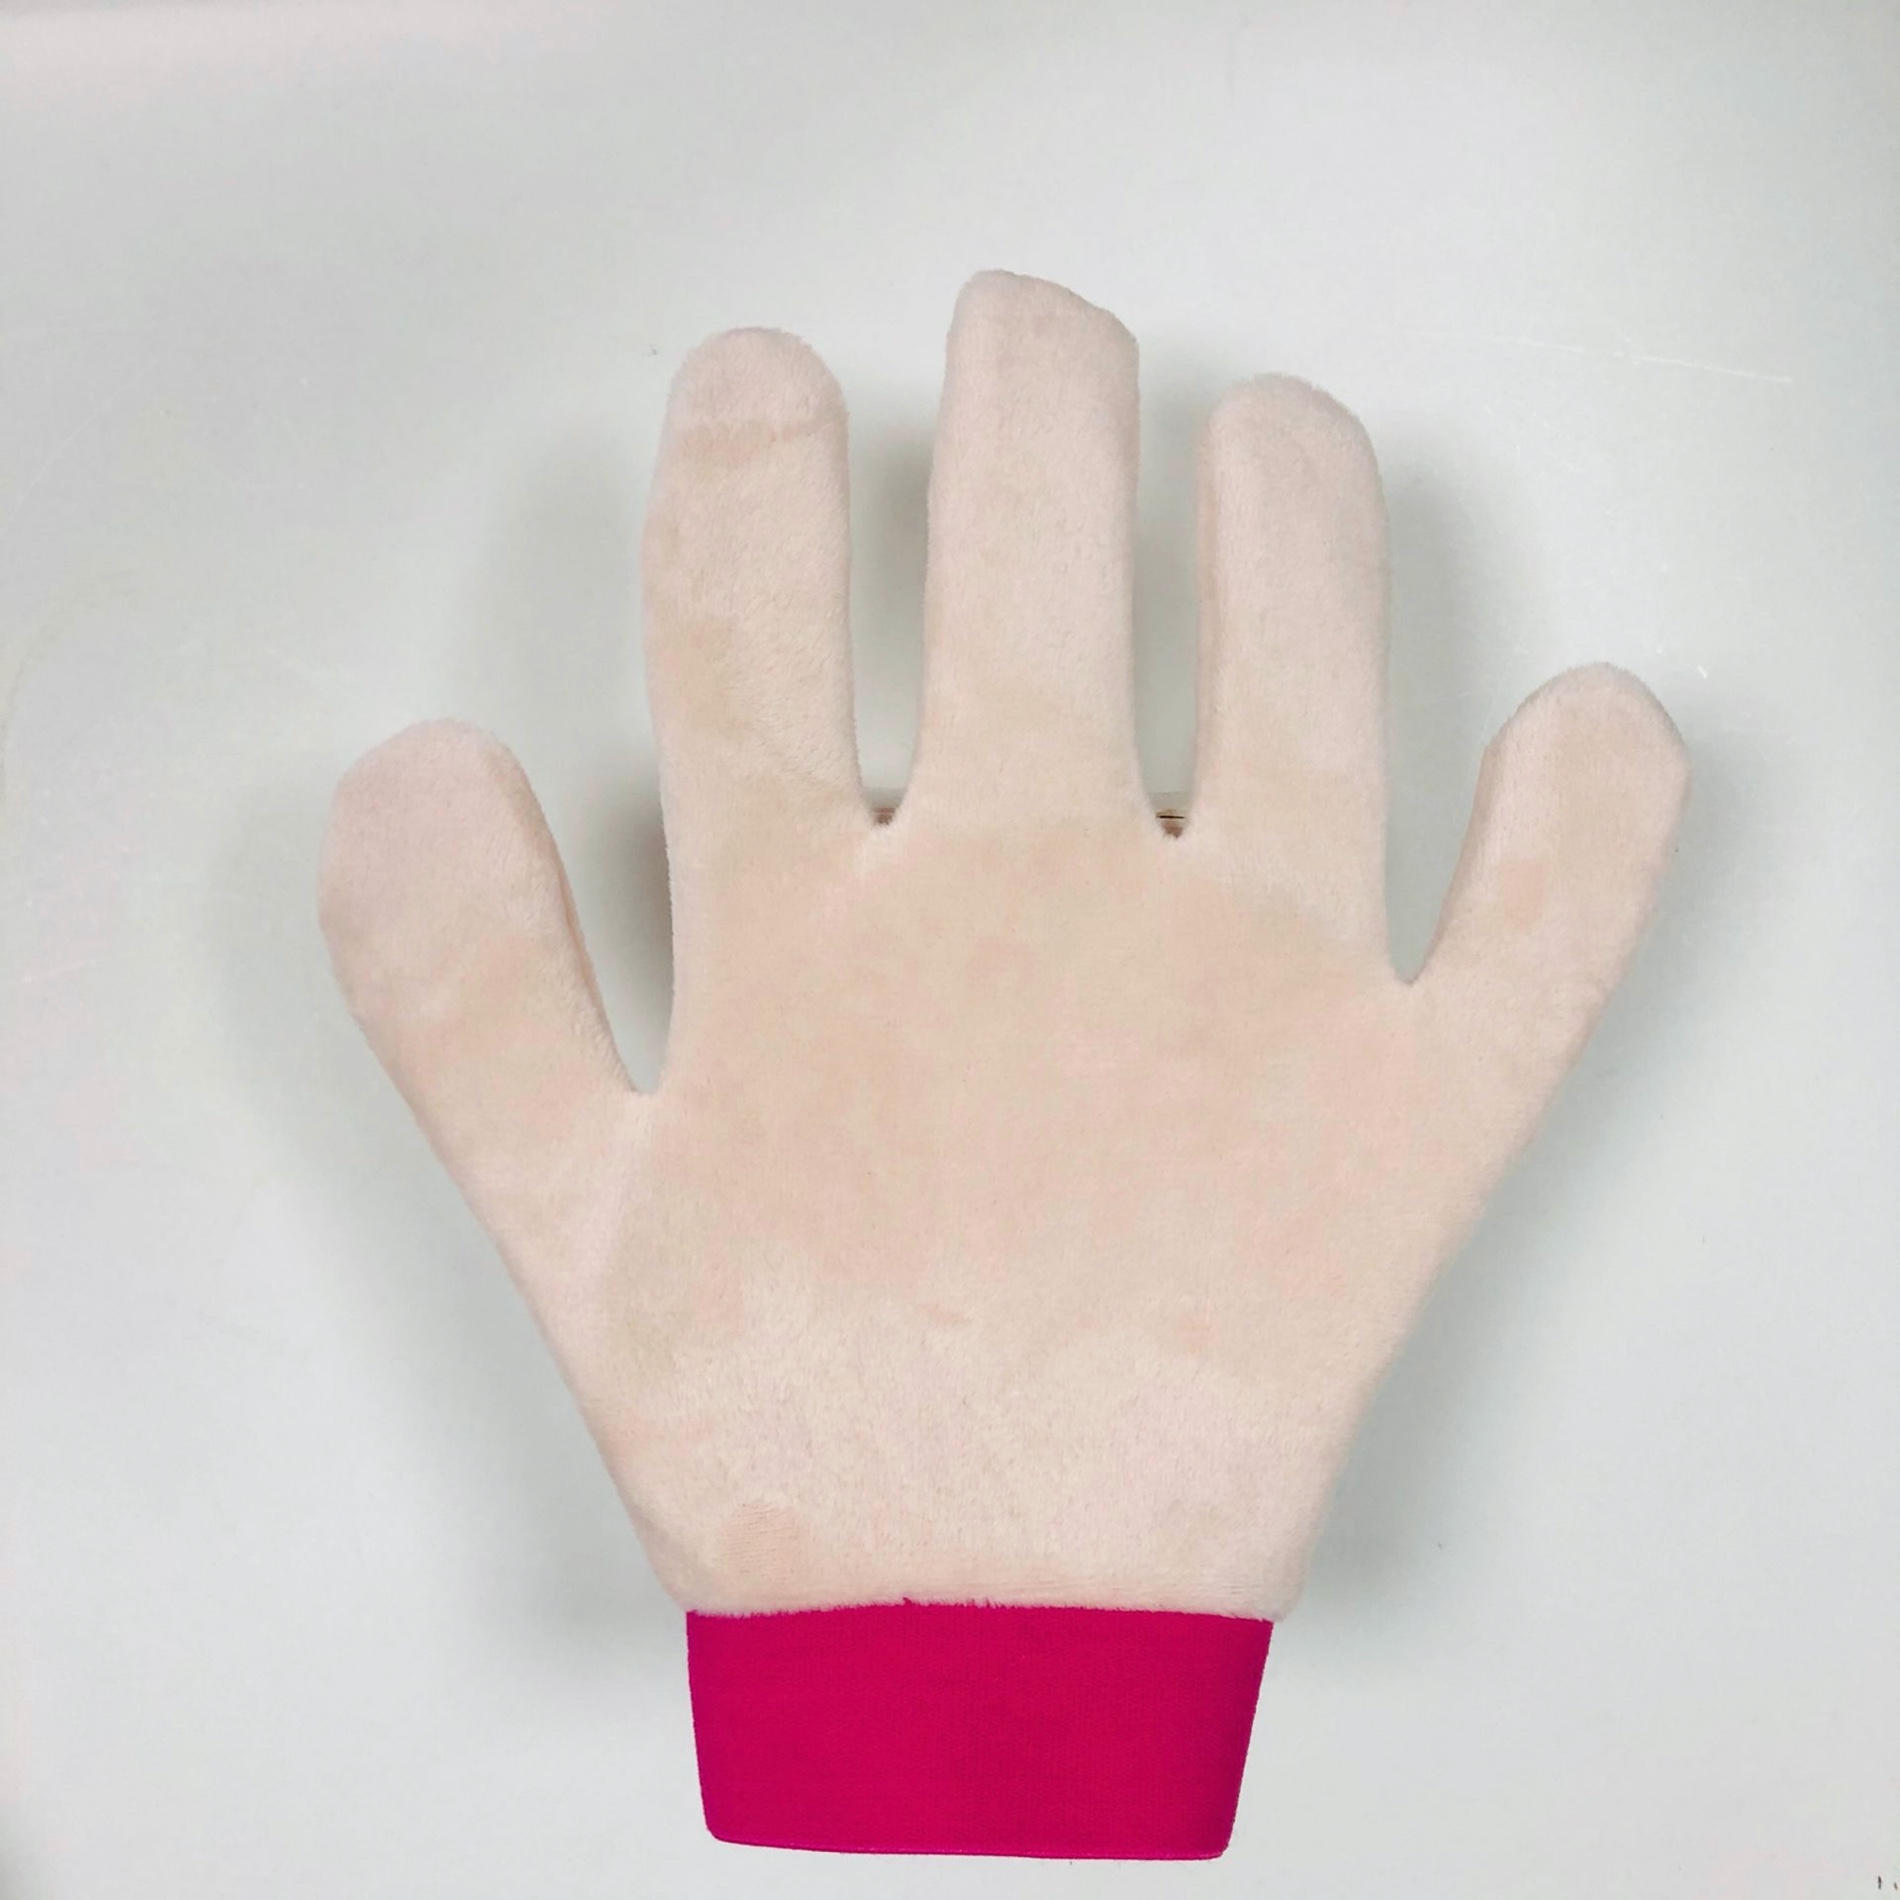 Kaufen 5 Finger Mikrofaser Selbstbräunende Applikatorhandschuhe;5 Finger Mikrofaser Selbstbräunende Applikatorhandschuhe Preis;5 Finger Mikrofaser Selbstbräunende Applikatorhandschuhe Marken;5 Finger Mikrofaser Selbstbräunende Applikatorhandschuhe Hersteller;5 Finger Mikrofaser Selbstbräunende Applikatorhandschuhe Zitat;5 Finger Mikrofaser Selbstbräunende Applikatorhandschuhe Unternehmen